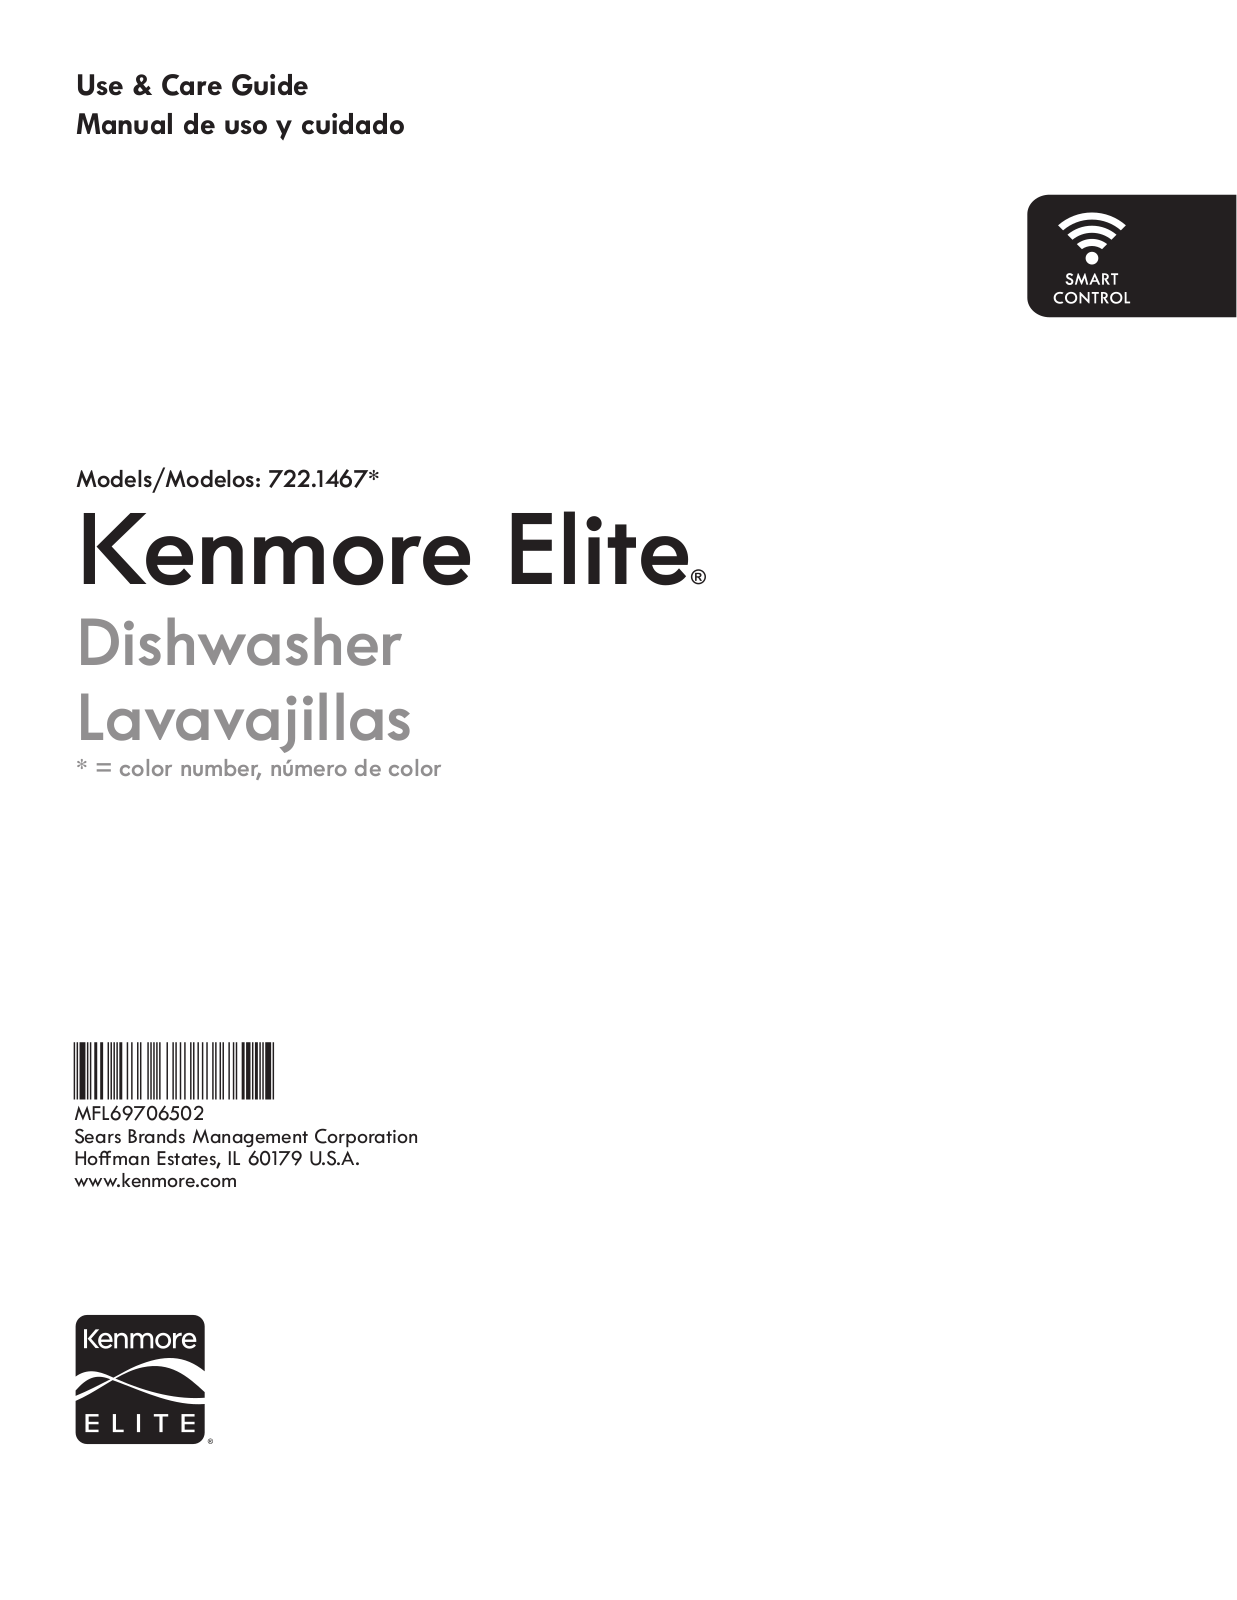 Kenmore Elite 722.1467 User Manual